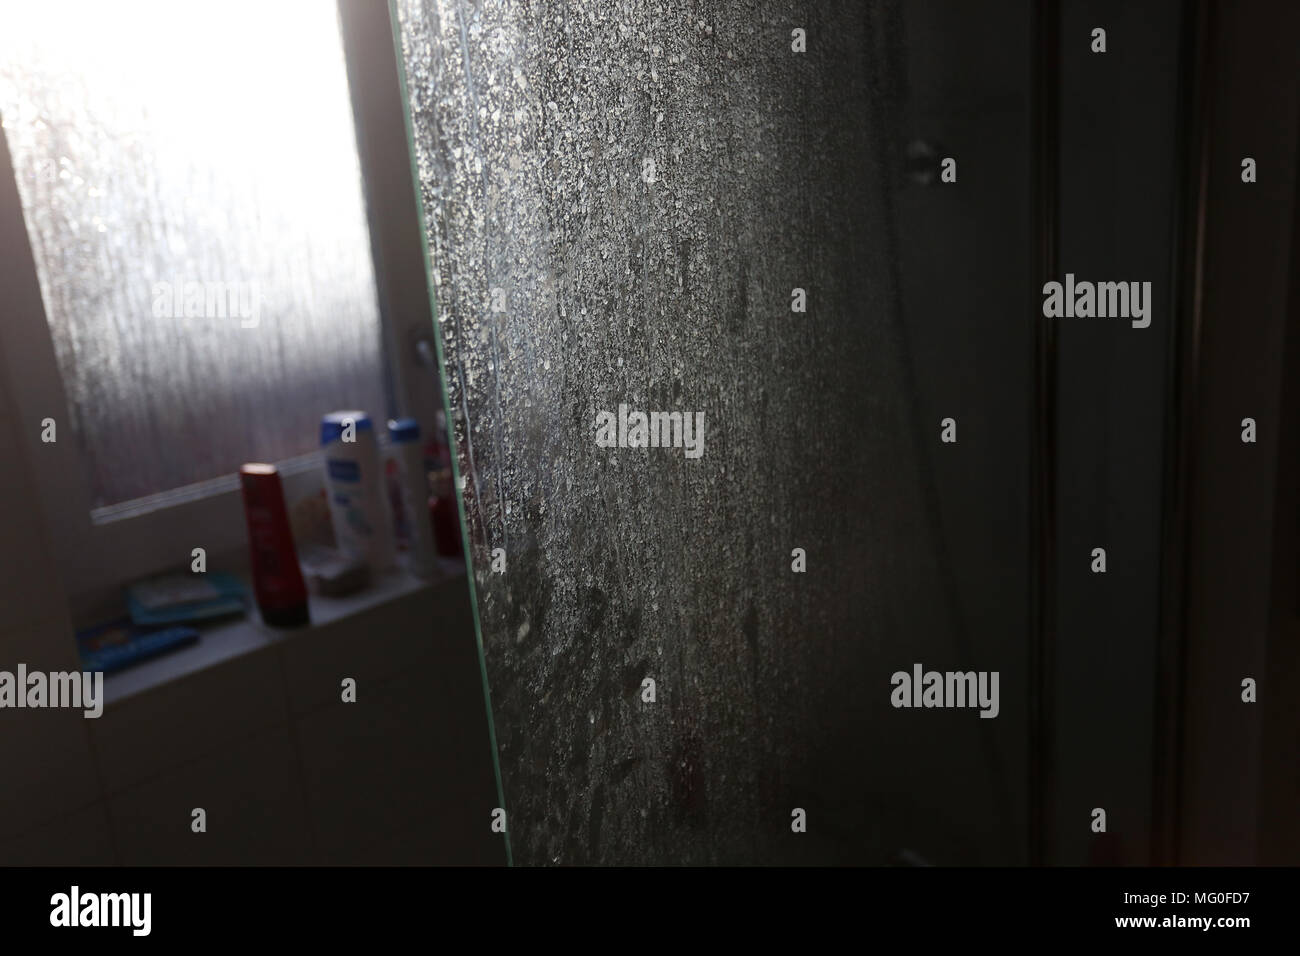 Wasserflecken und harten Wasserflecken abgebildet auf eine Dusche Glas Tür  in Chichester, West Sussex, UK Stockfotografie - Alamy